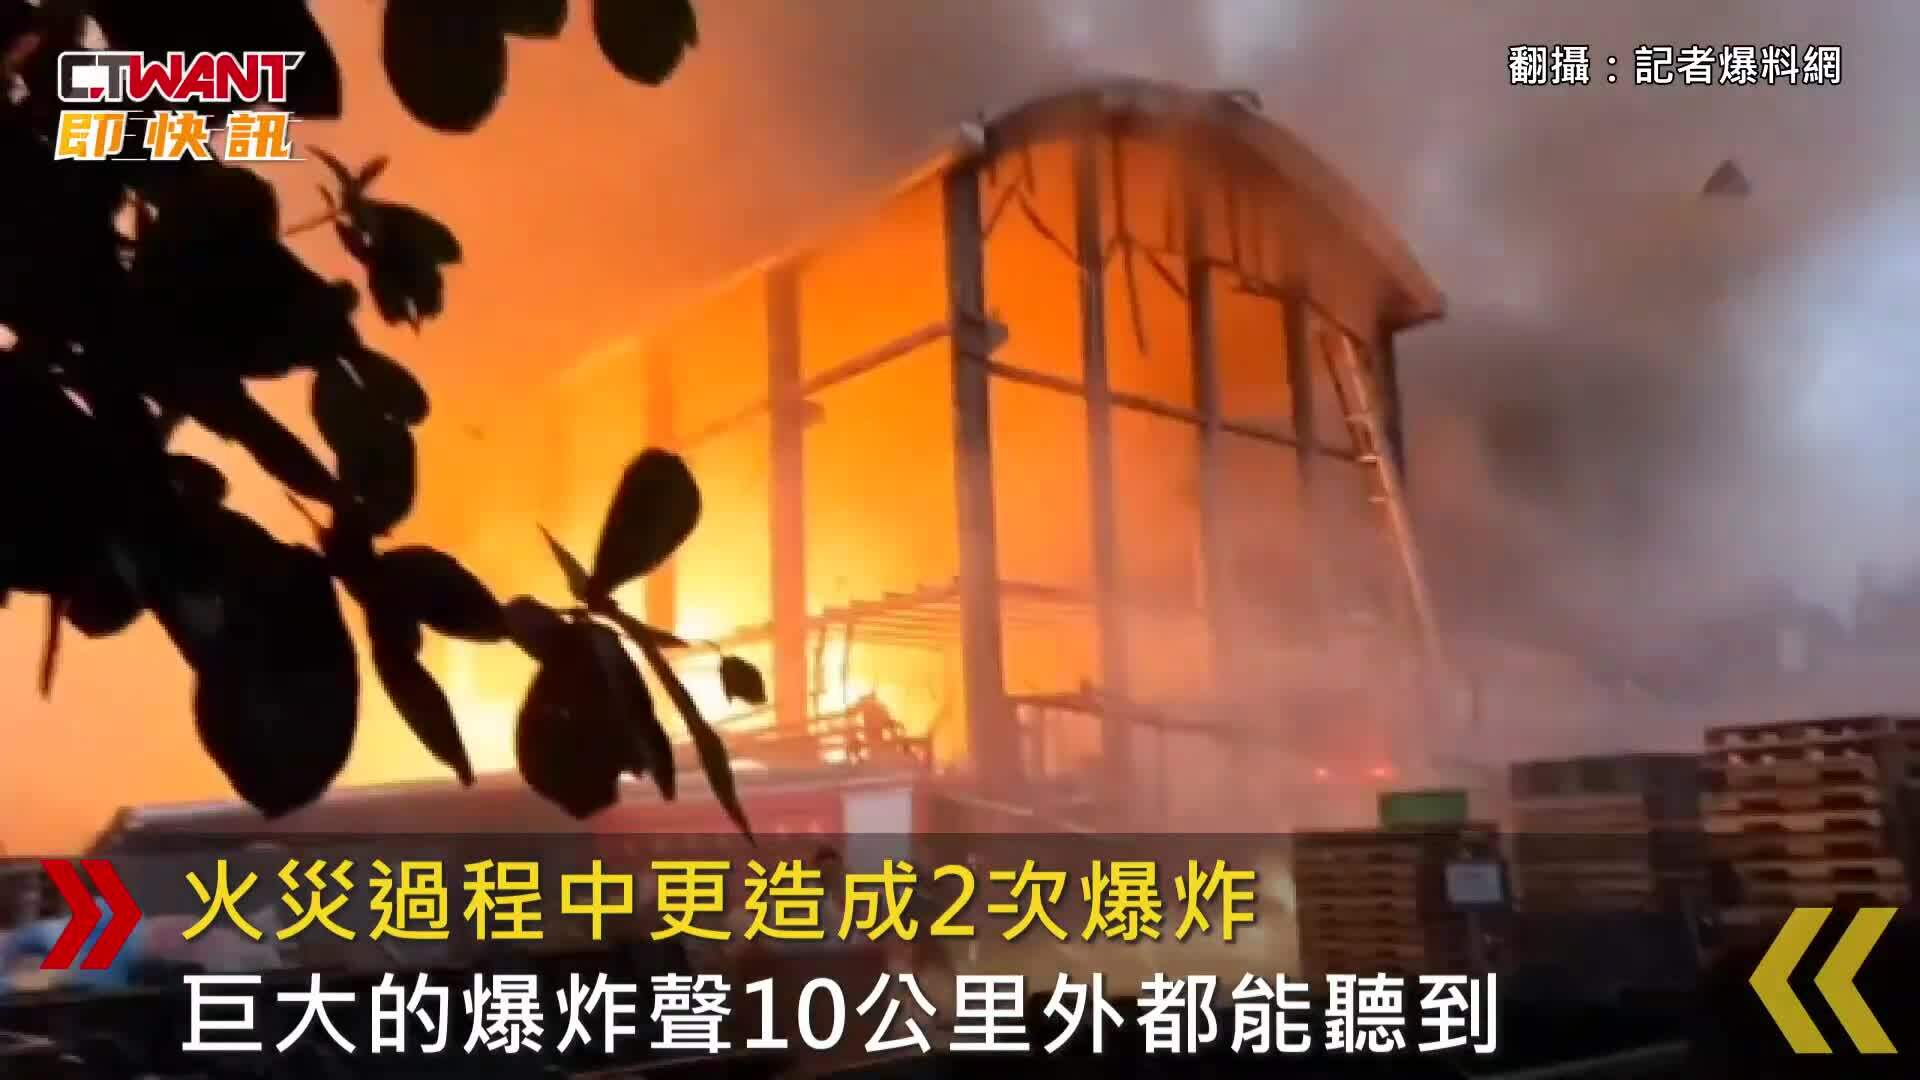 Có 19 người Việt Nam bị thương trong vụ nổ nhà máy tại Đài Loan, tình hình sức khoẻ hiện tại ra sao? - ảnh 2